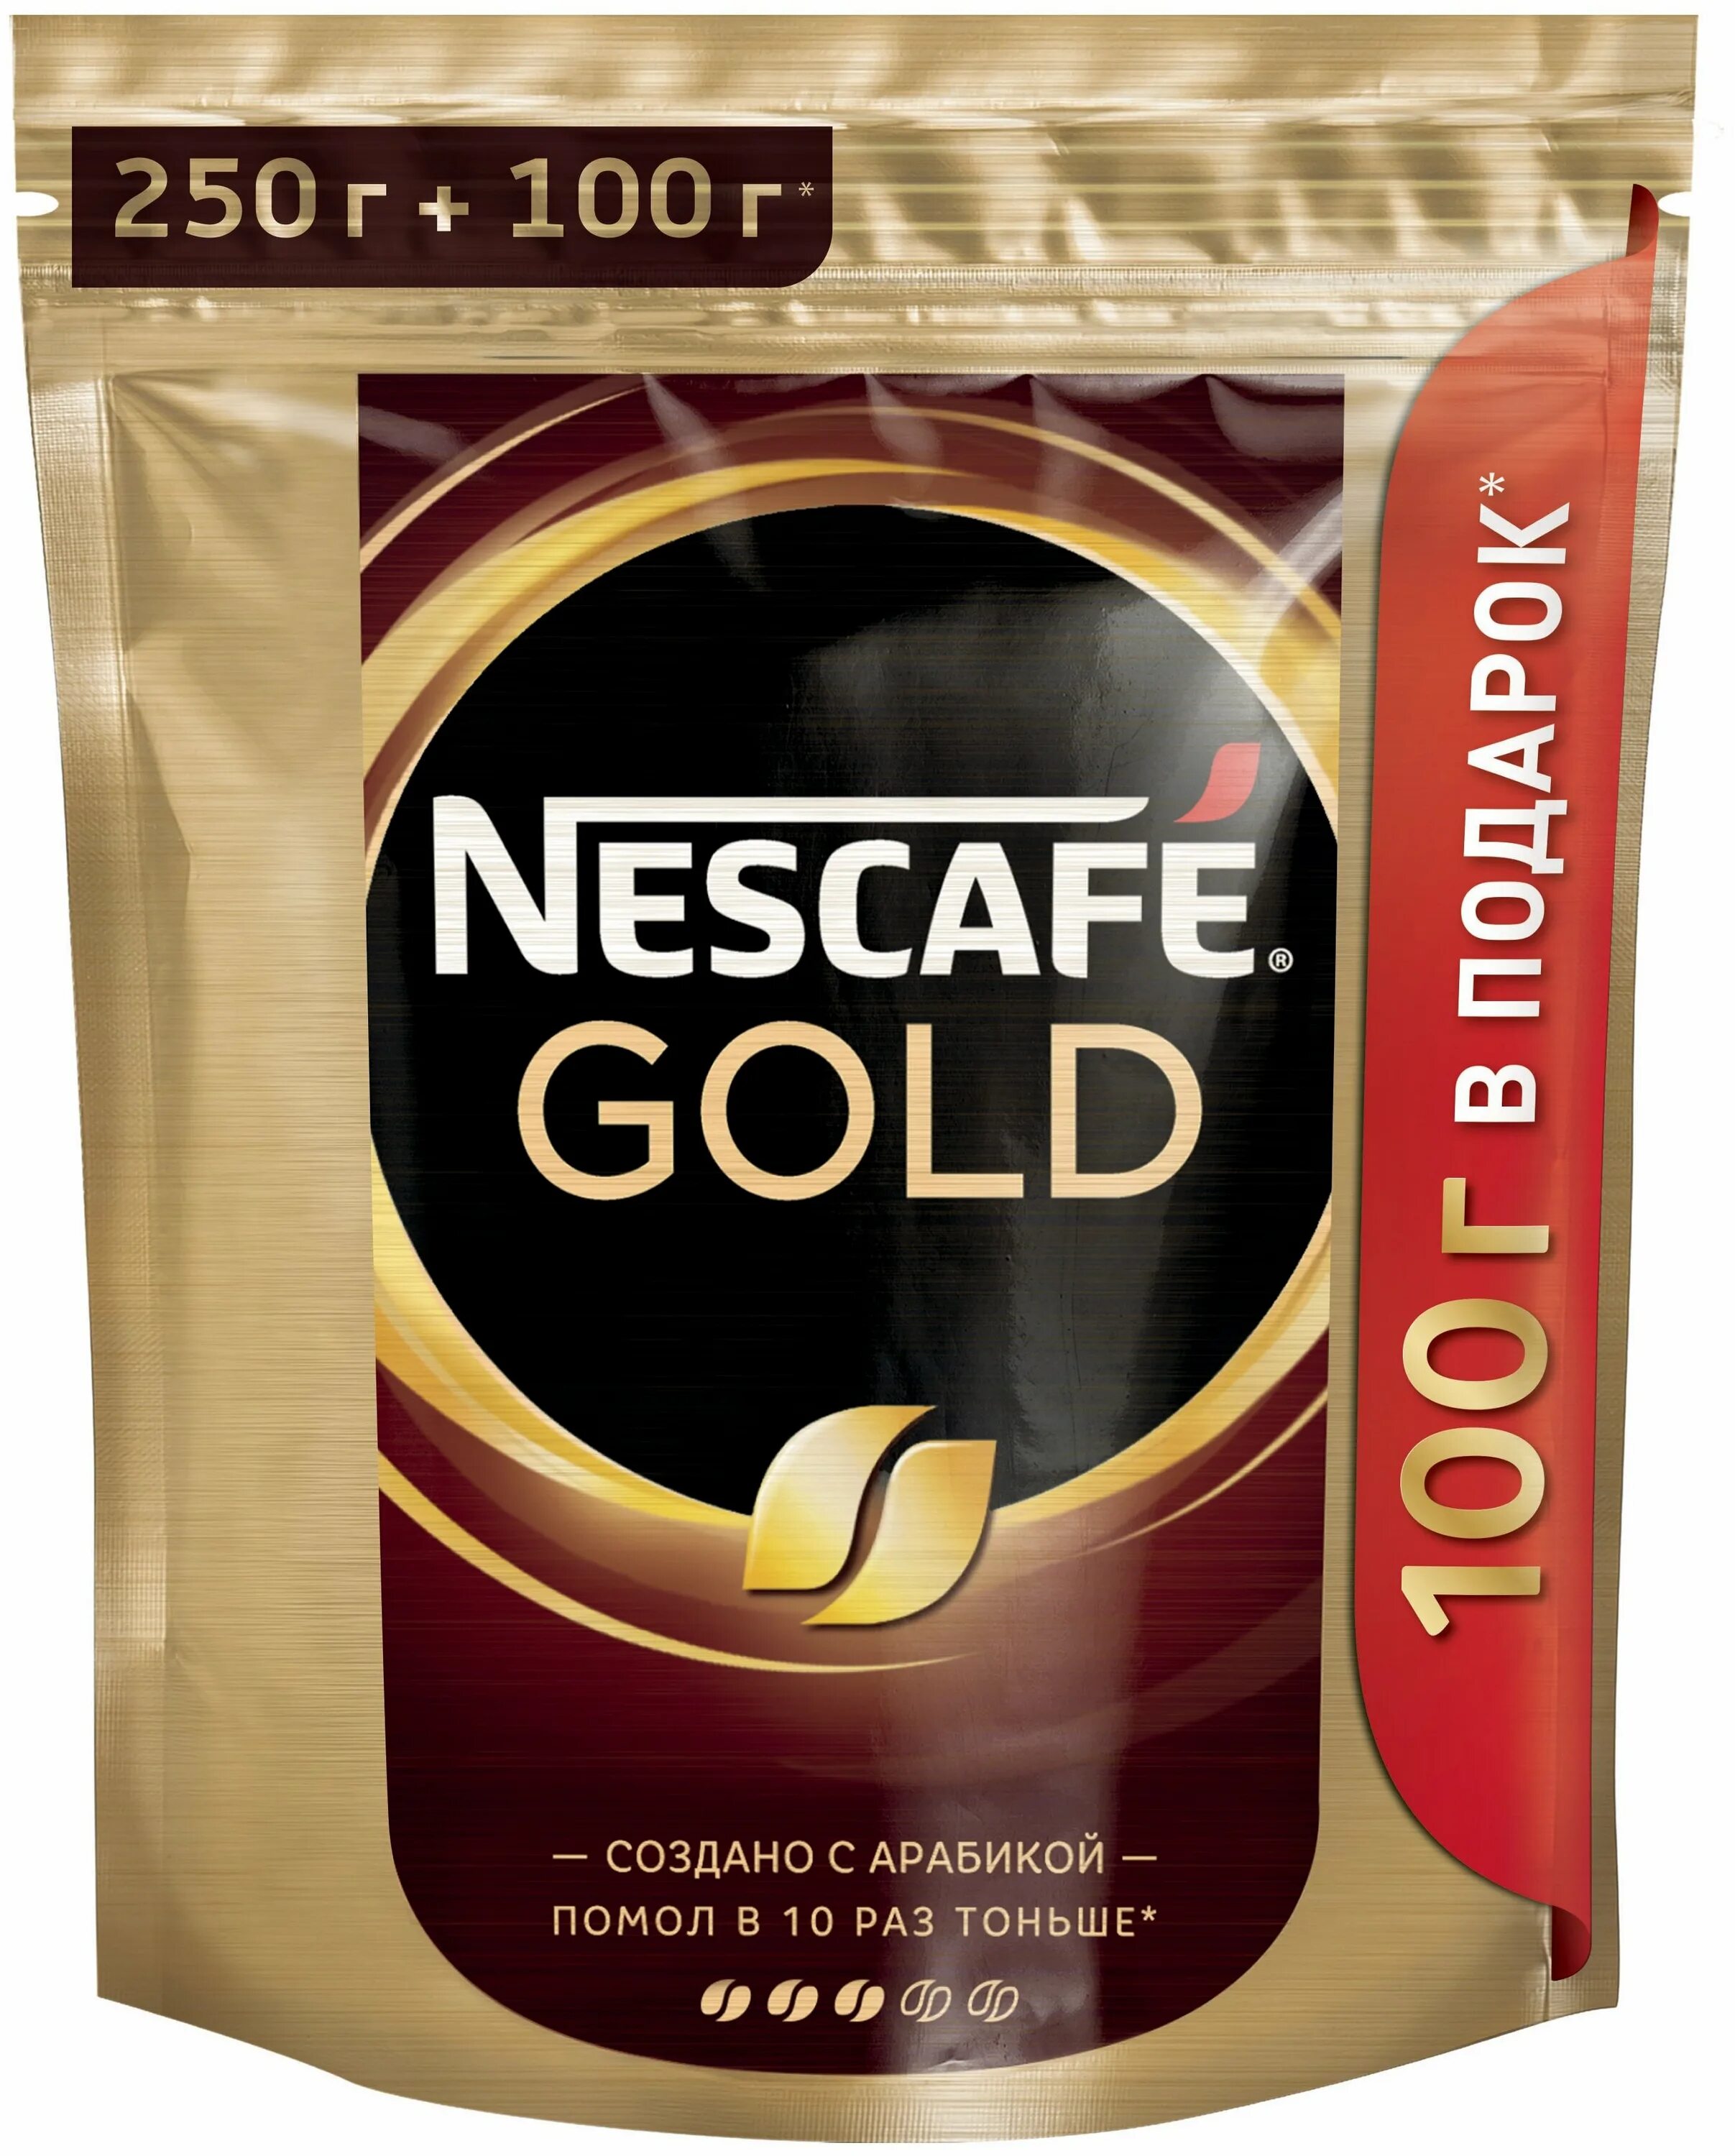 Nescafe Gold 250г. Nescafe Gold 250. Nescafe Gold 250+50г. Кофе Нескафе Голд 250. Кофе нескафе отзывы